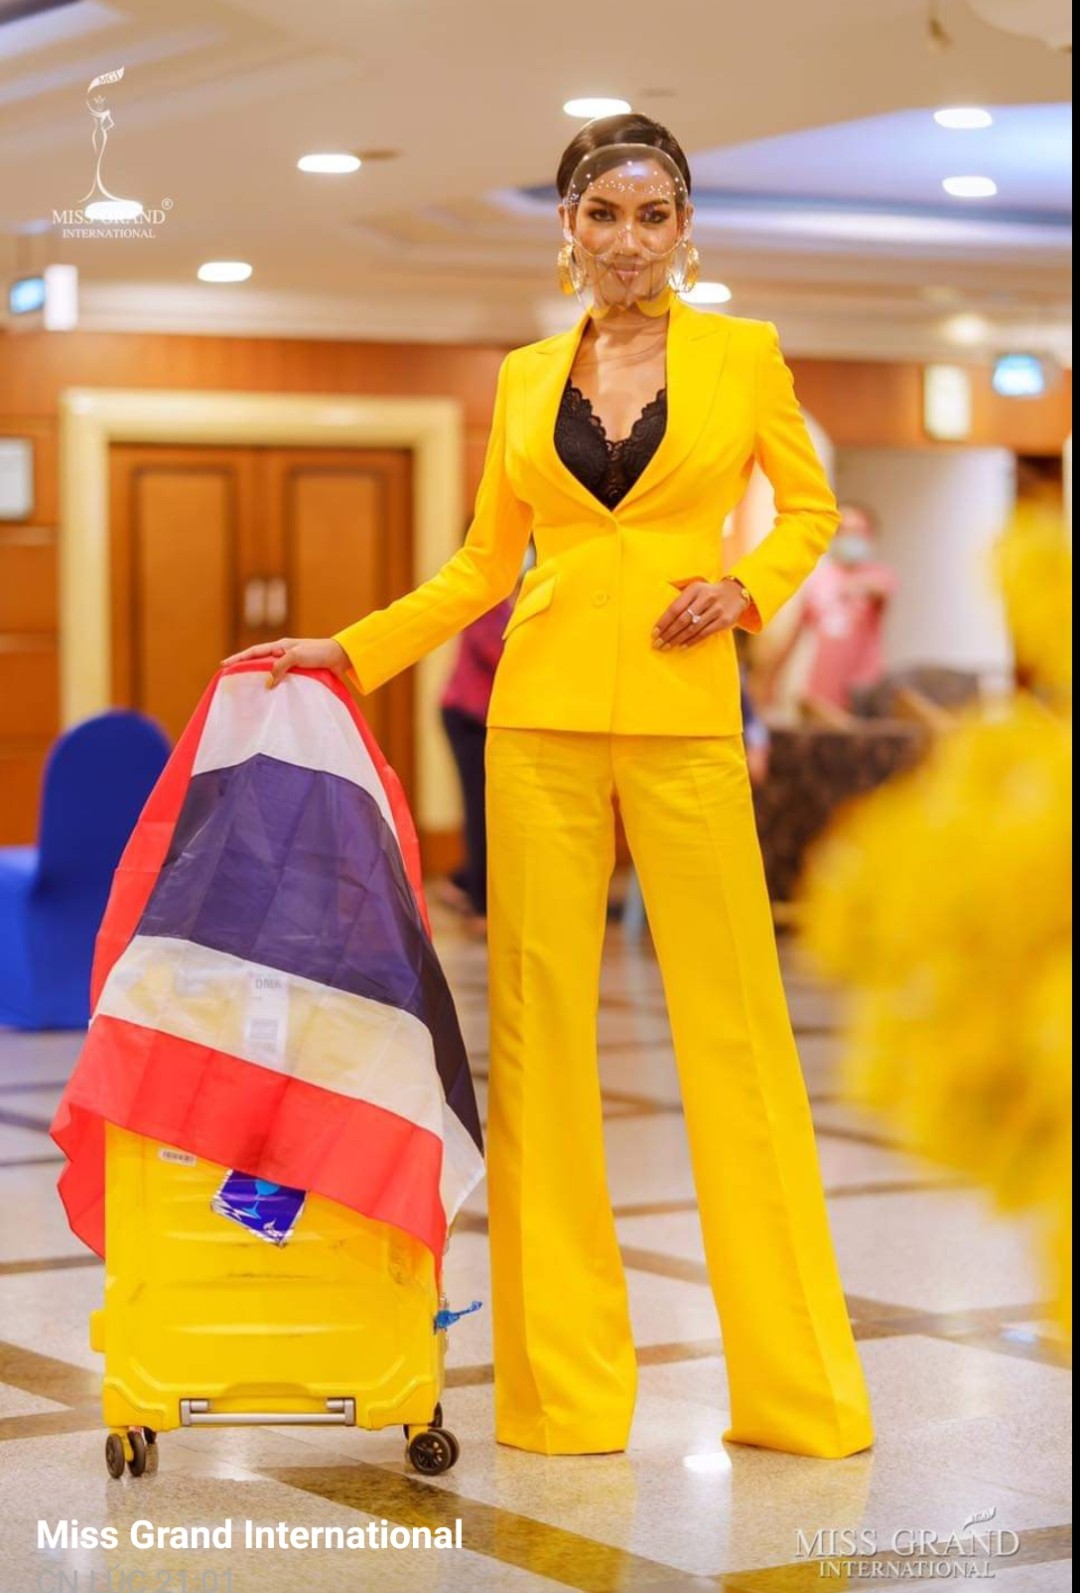 Hoa hậu nước chủ nhà Thái Lan trình diện trong bộ suit màu vàng, ôm nhẹ, mặc kèm áo bra ren màu đen vừa cá tính lại vô cùng quyến rũ. Khẩu trang của người đẹp dạng nhựa trong và có kết cấu như một chiếc mặt nạ, trùm lên cả mặt.